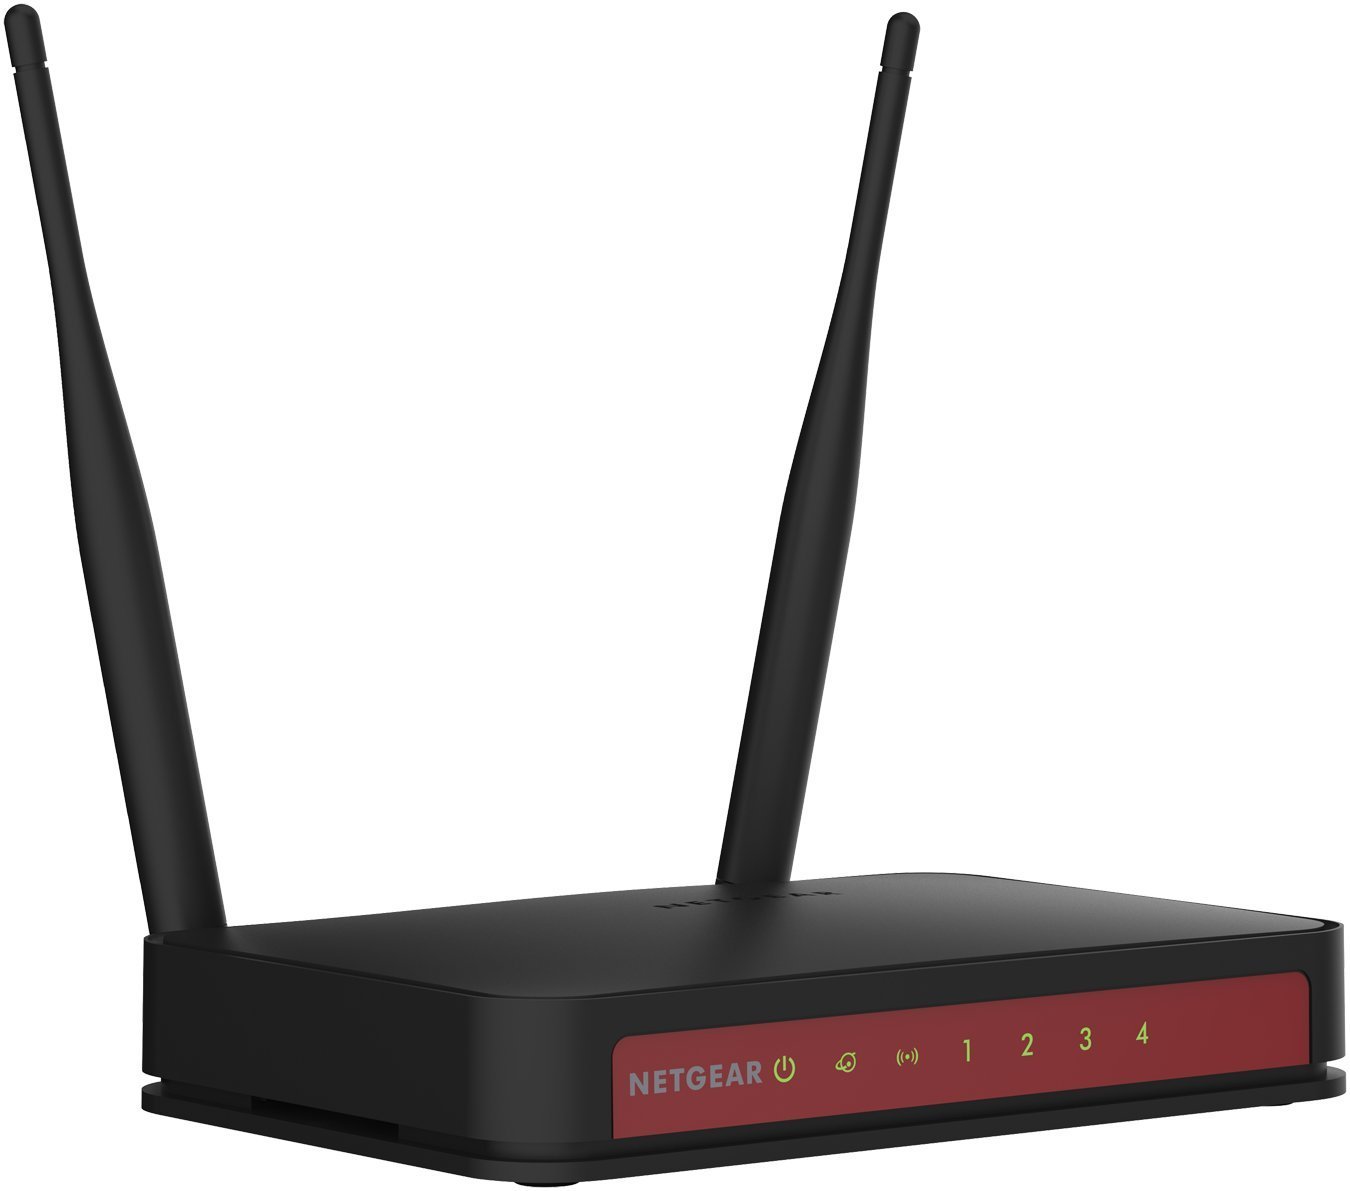 Netgear JWNR2010 N300 Wireless Router - Best Router